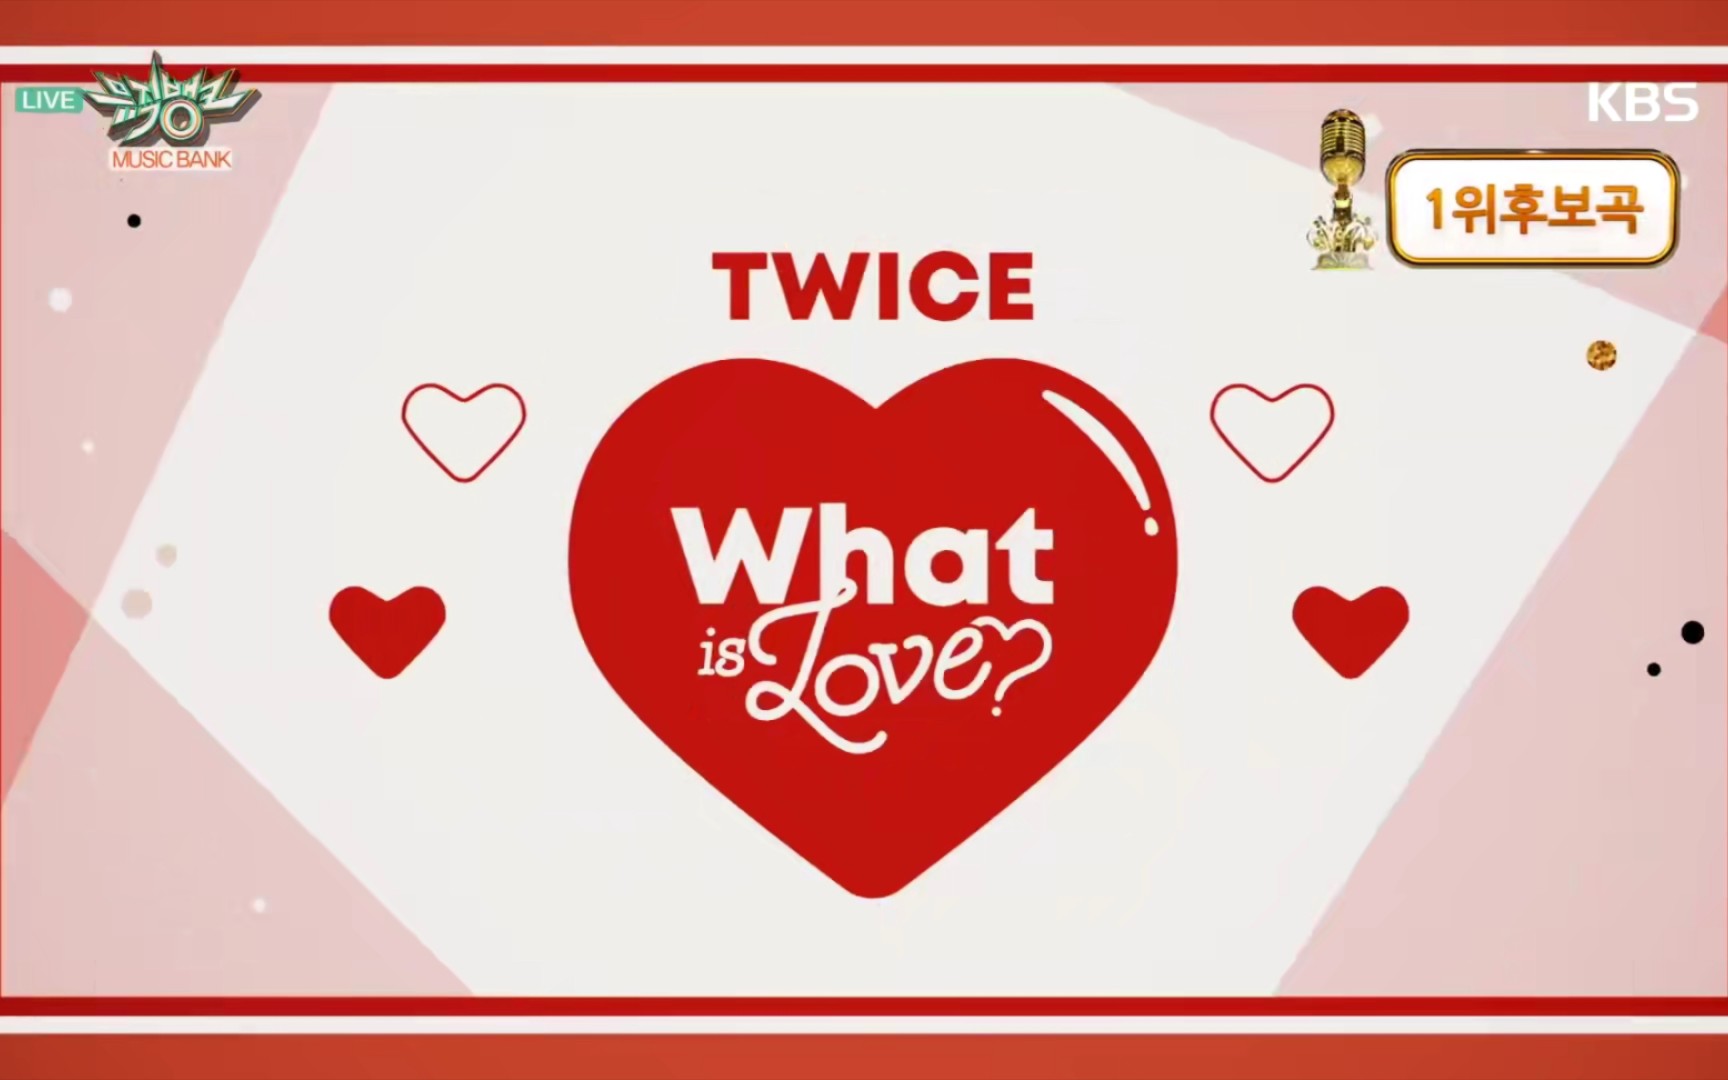 【高质量】What is love? - TWICE 舞台背景+音乐